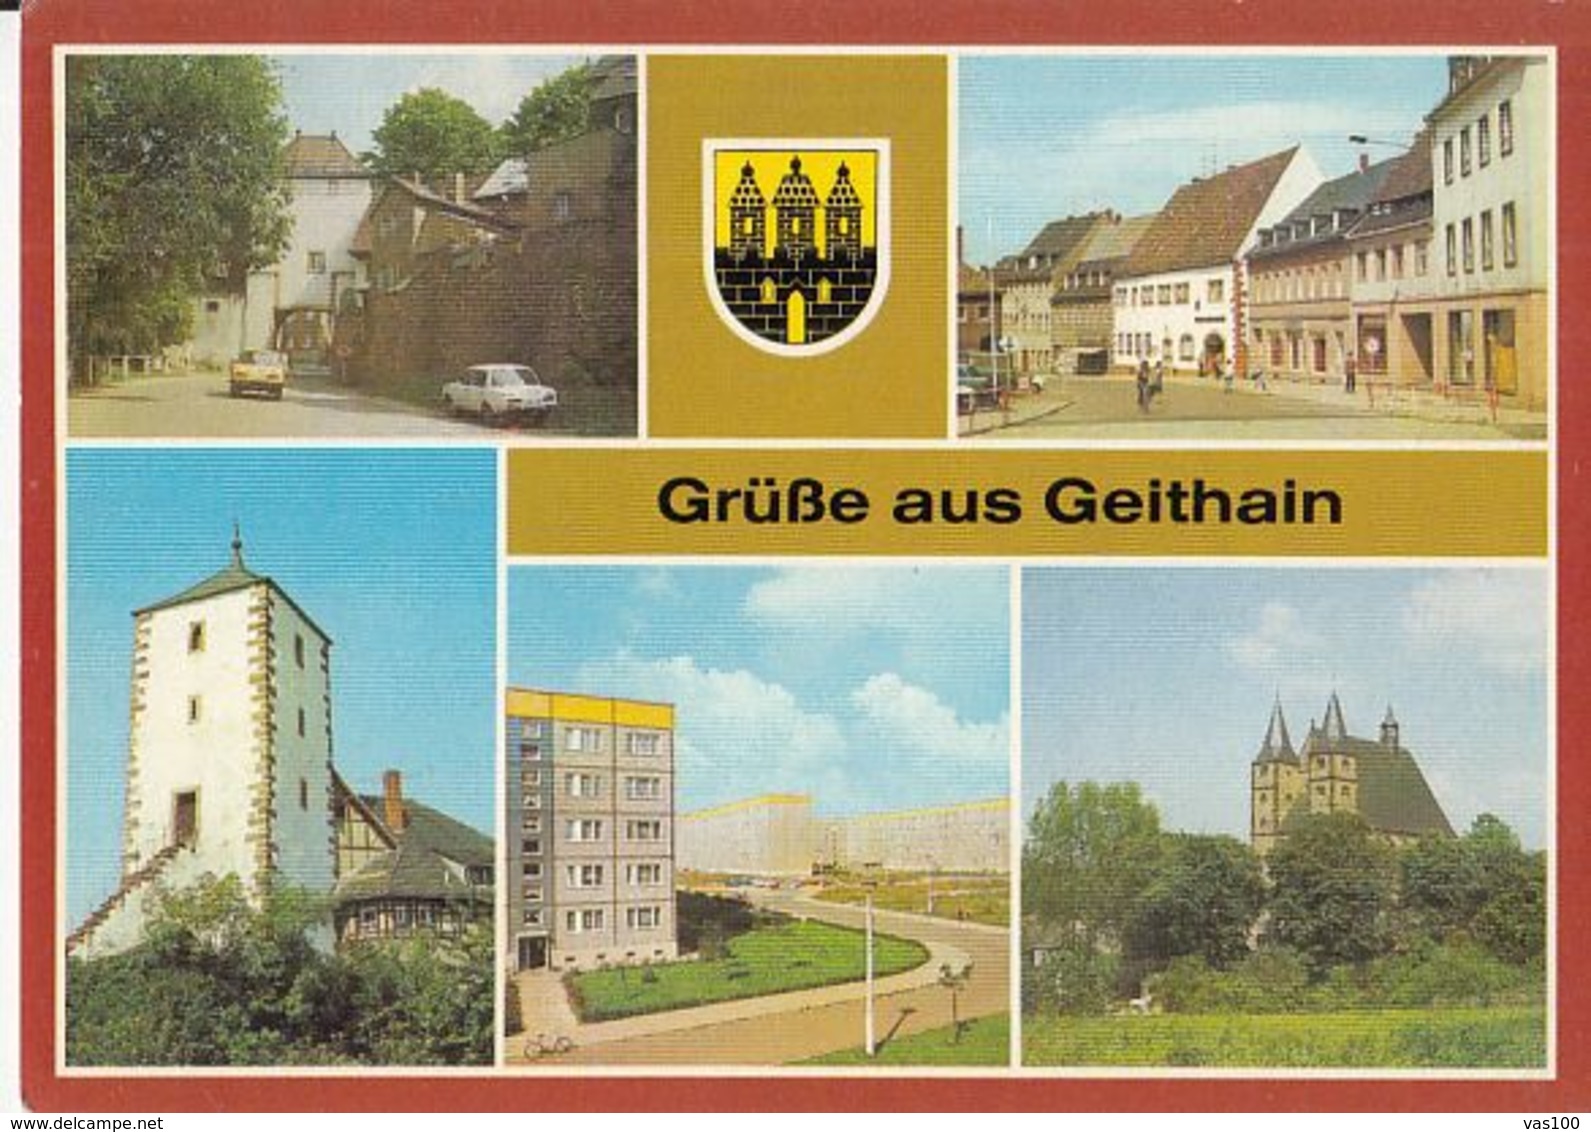 80900- GEITHAIN- GATE, SQUARE, TOWER, APARTMENT BUILDINGS, CHURCH, BIKE, CAR - Geithain